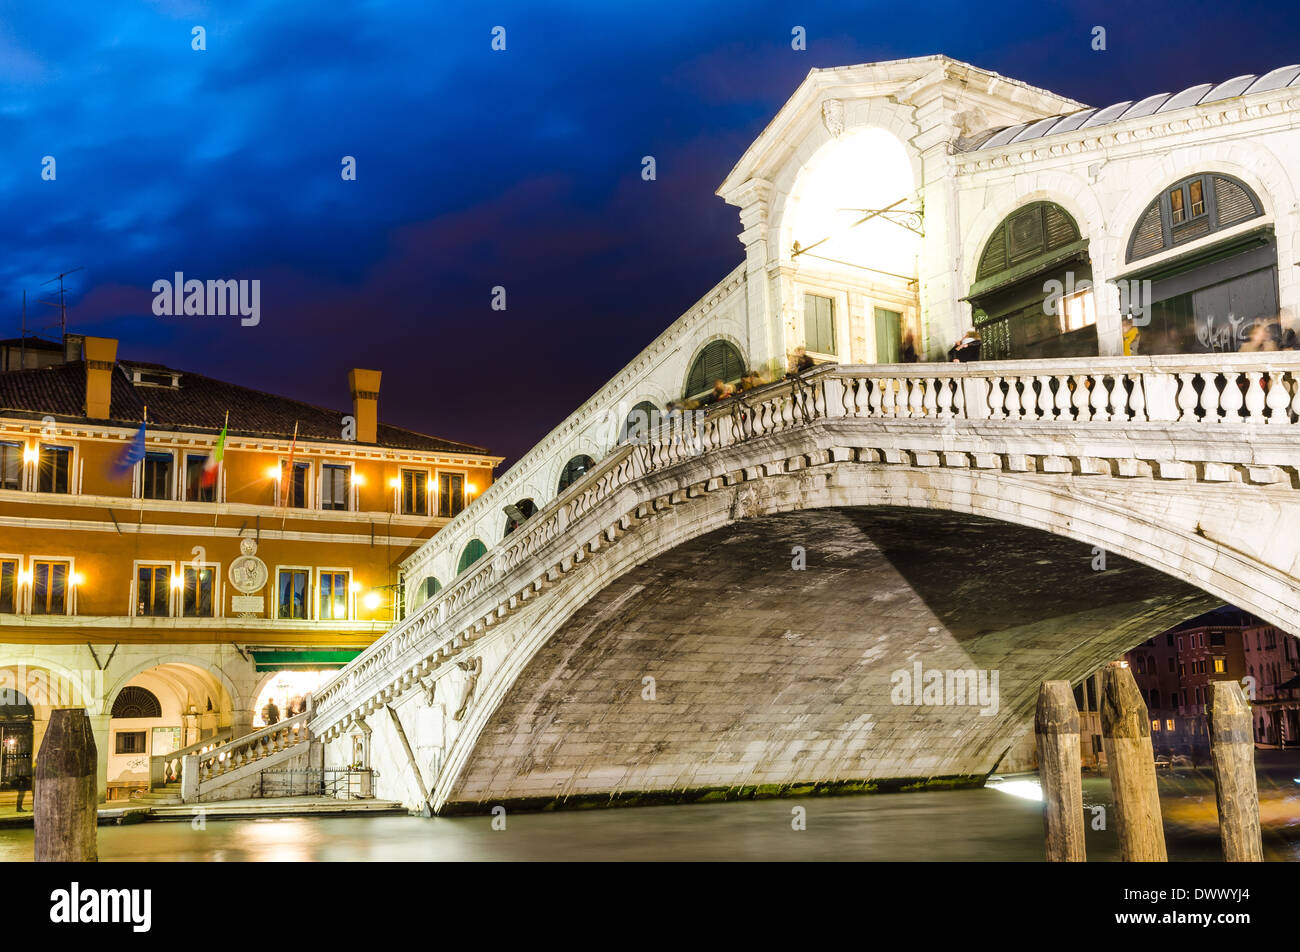 Venise, Italie. Pont du Rialto, le Ponte di Rialto, célèbre attraction touristique dans la ville, l'architecture médiévale, crépuscule vue. Banque D'Images